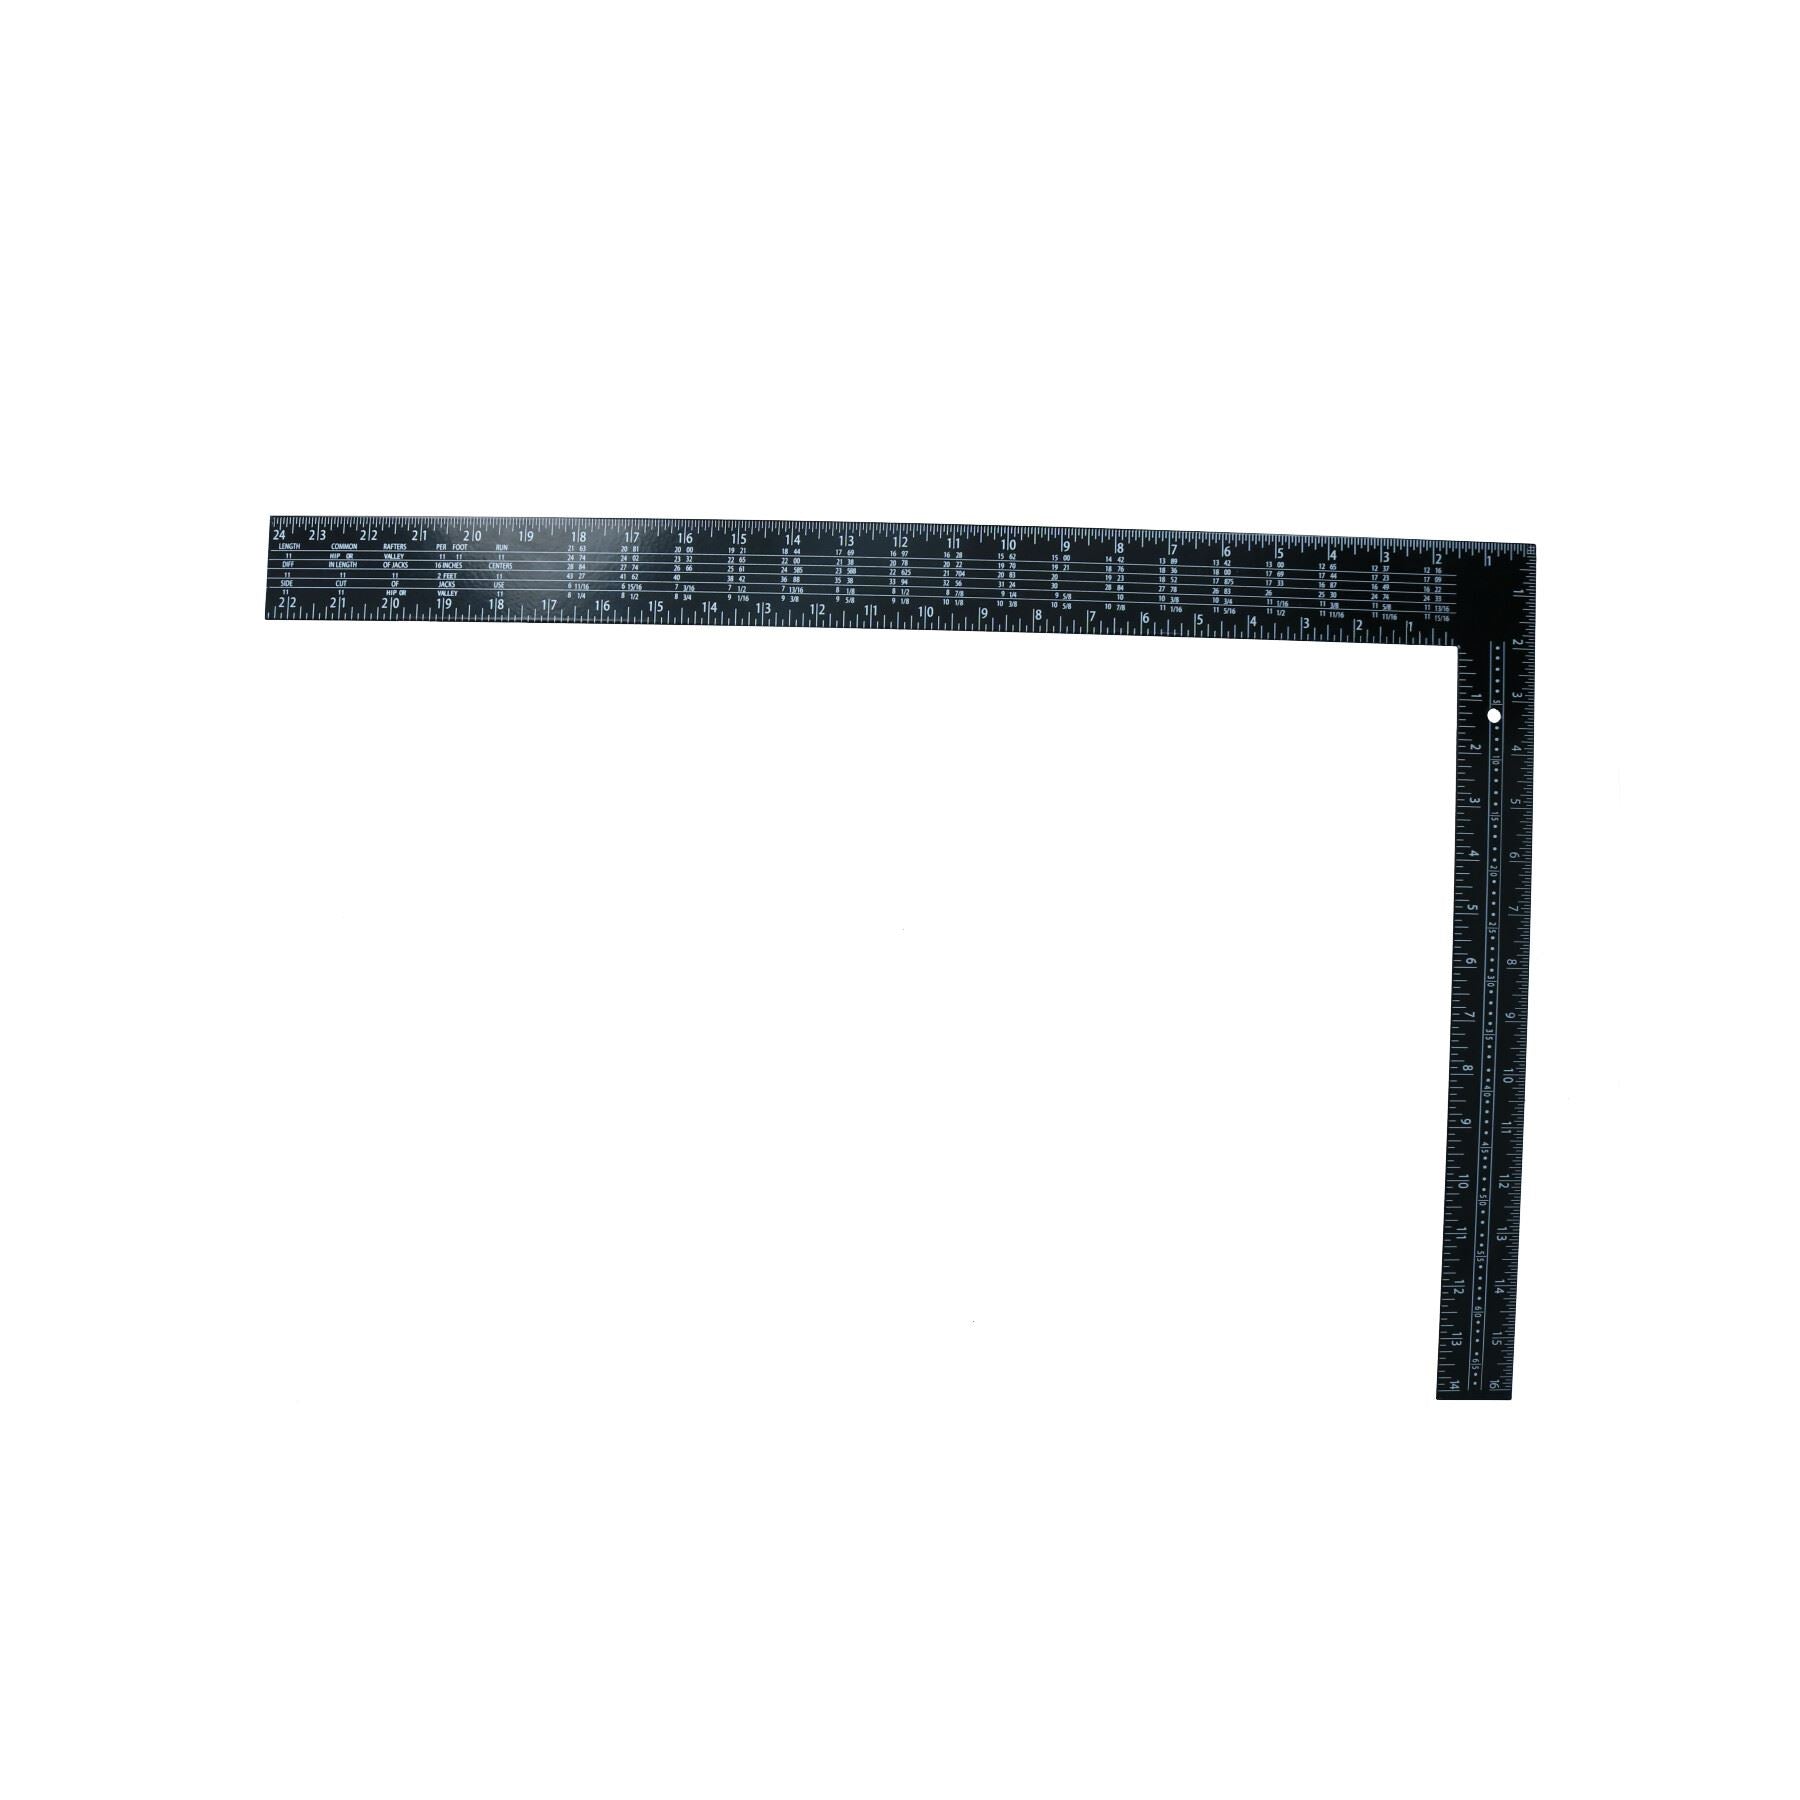 24" x 16" Steel Set Speed Square Rafter Rule Ruler Metric Imperial Markings